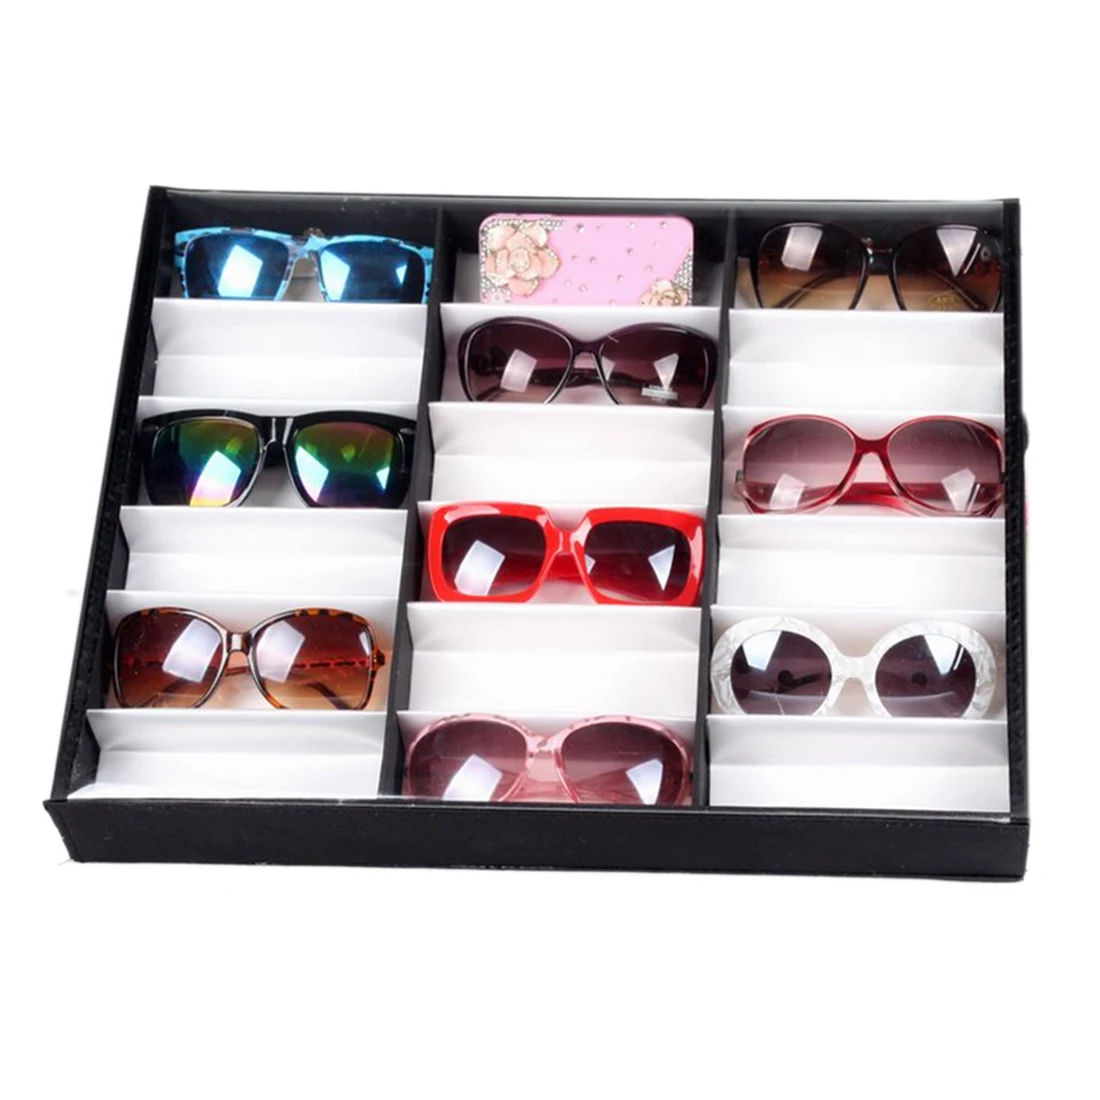 Новые 16 шт/18 шт солнцезащитные очки для чтения Показать Стенд держатель очки дисплей Поддержка Полка для хранения, коробка чехол-черный+ белый